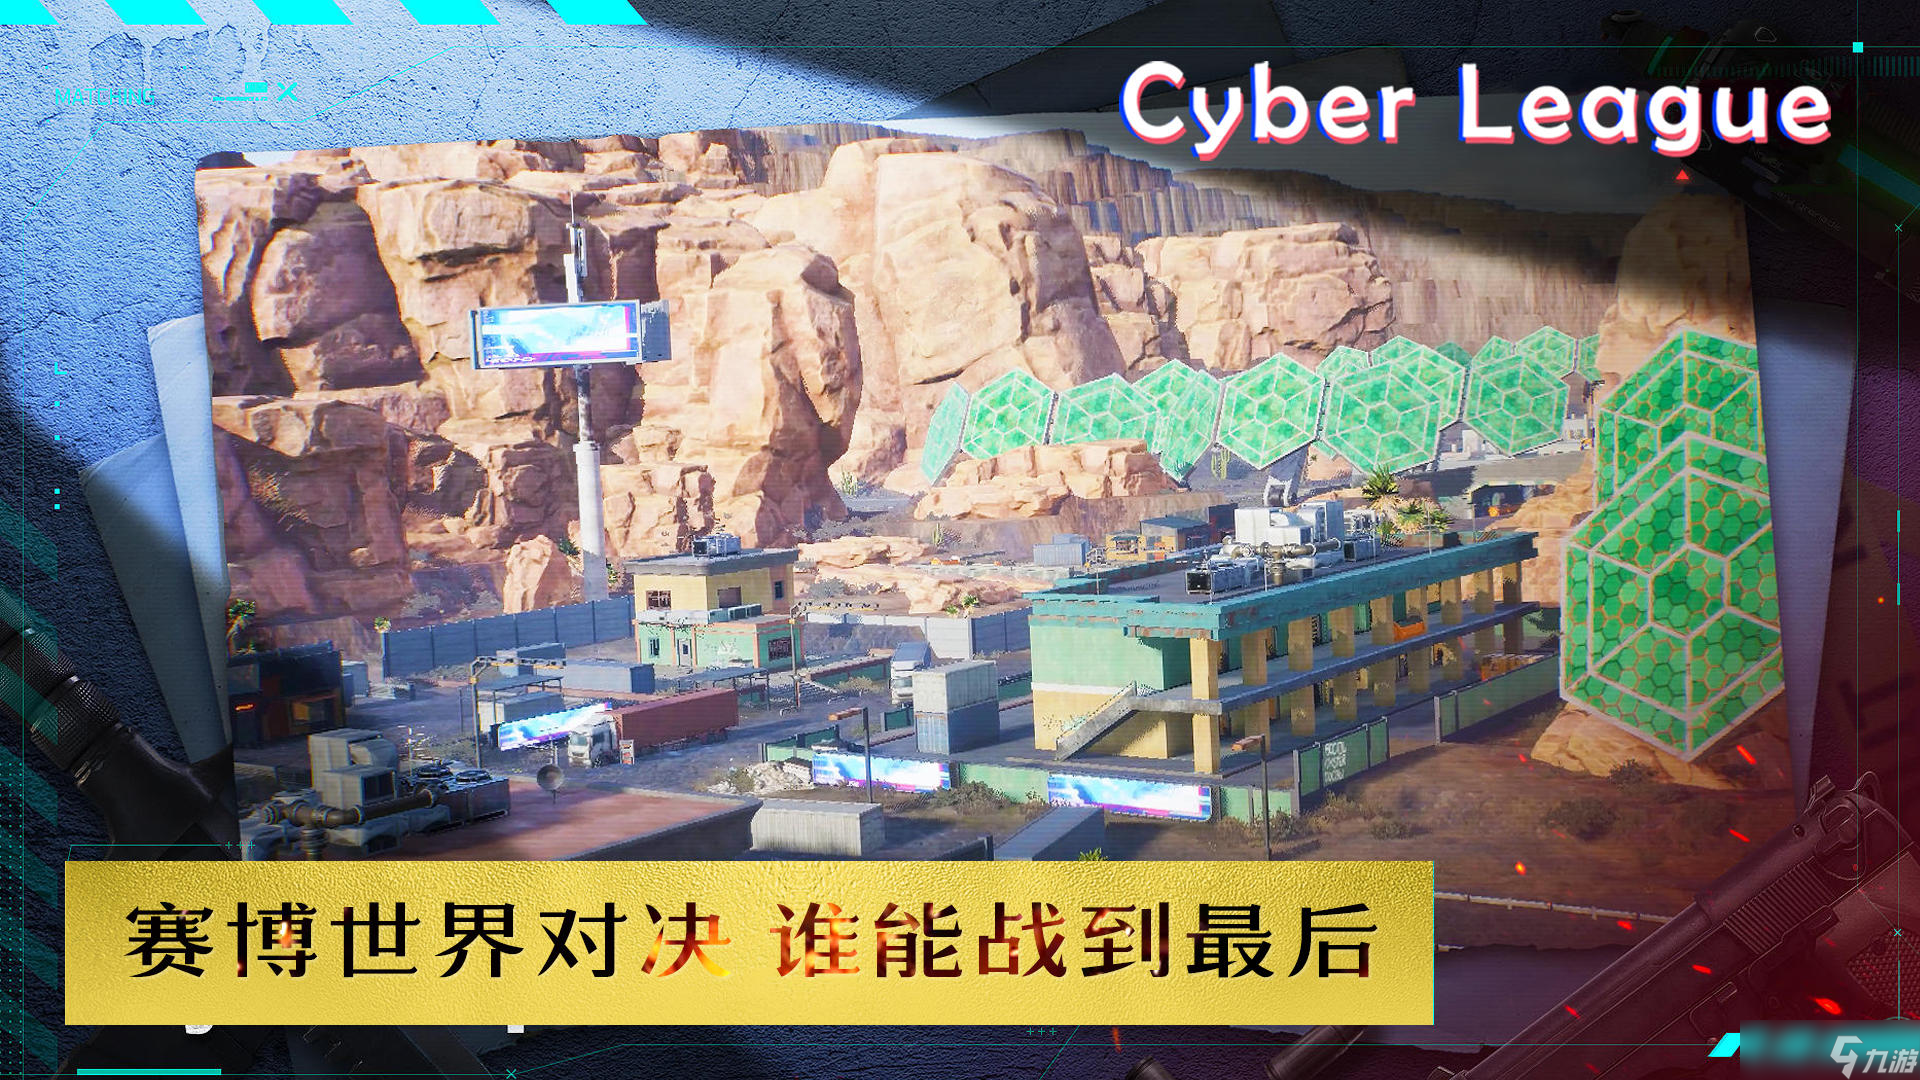 赛博联盟Cyber League电脑版下载地址及安装说明